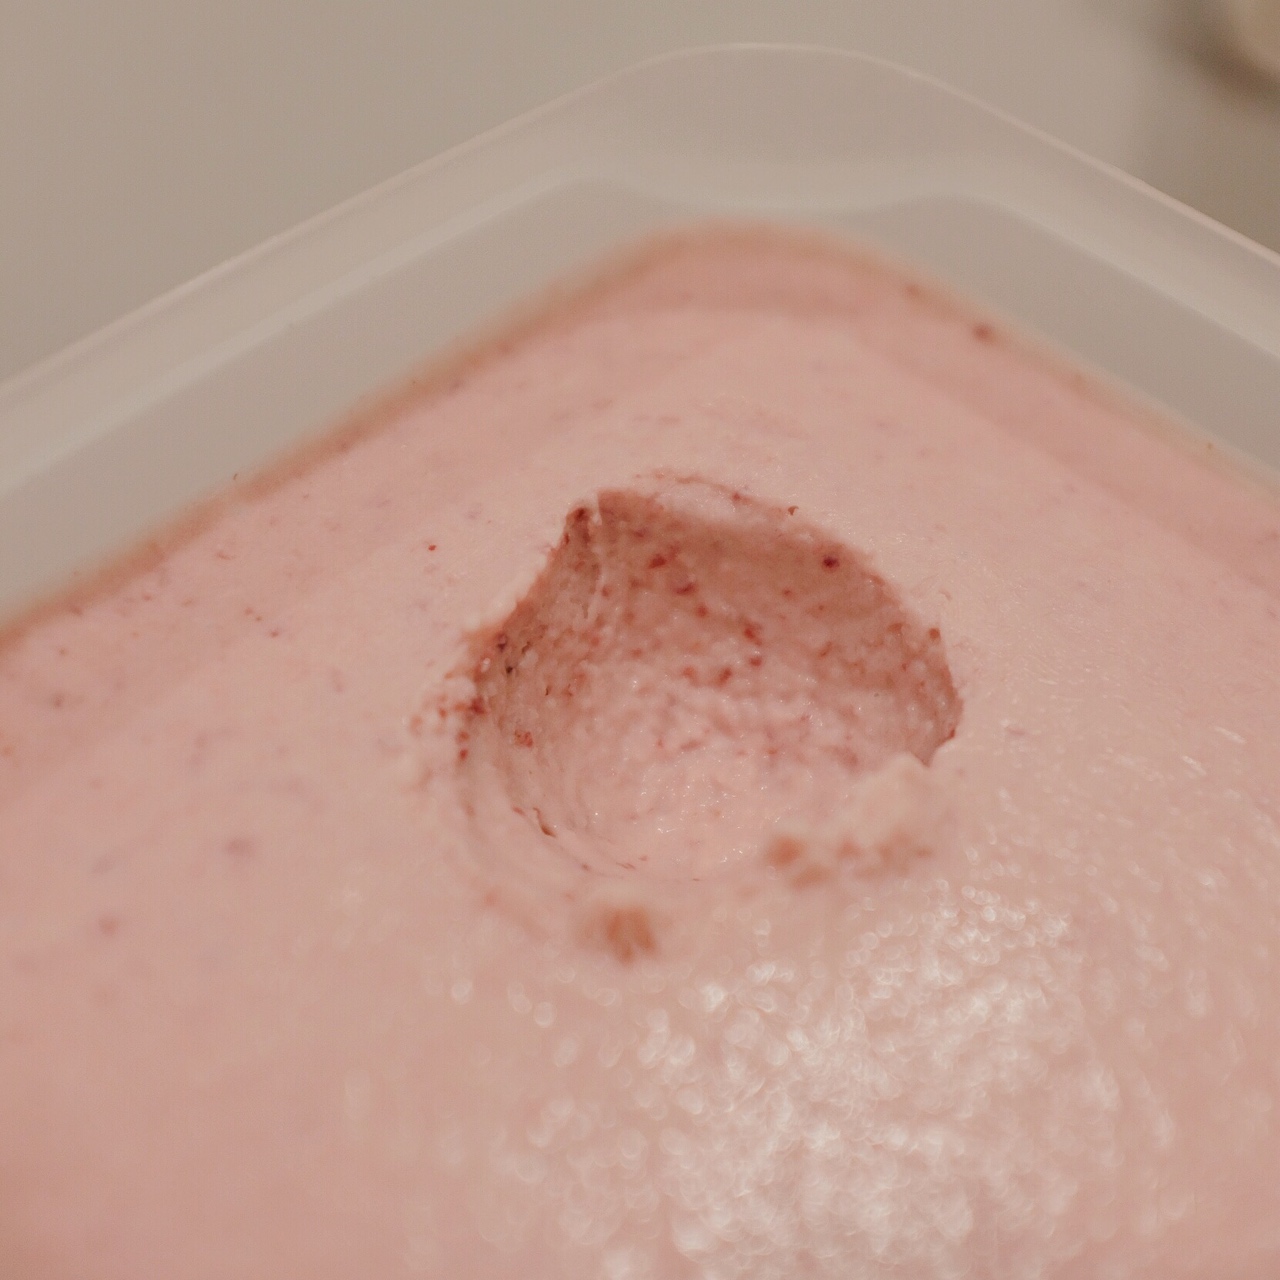 蔓越莓冰淇淋